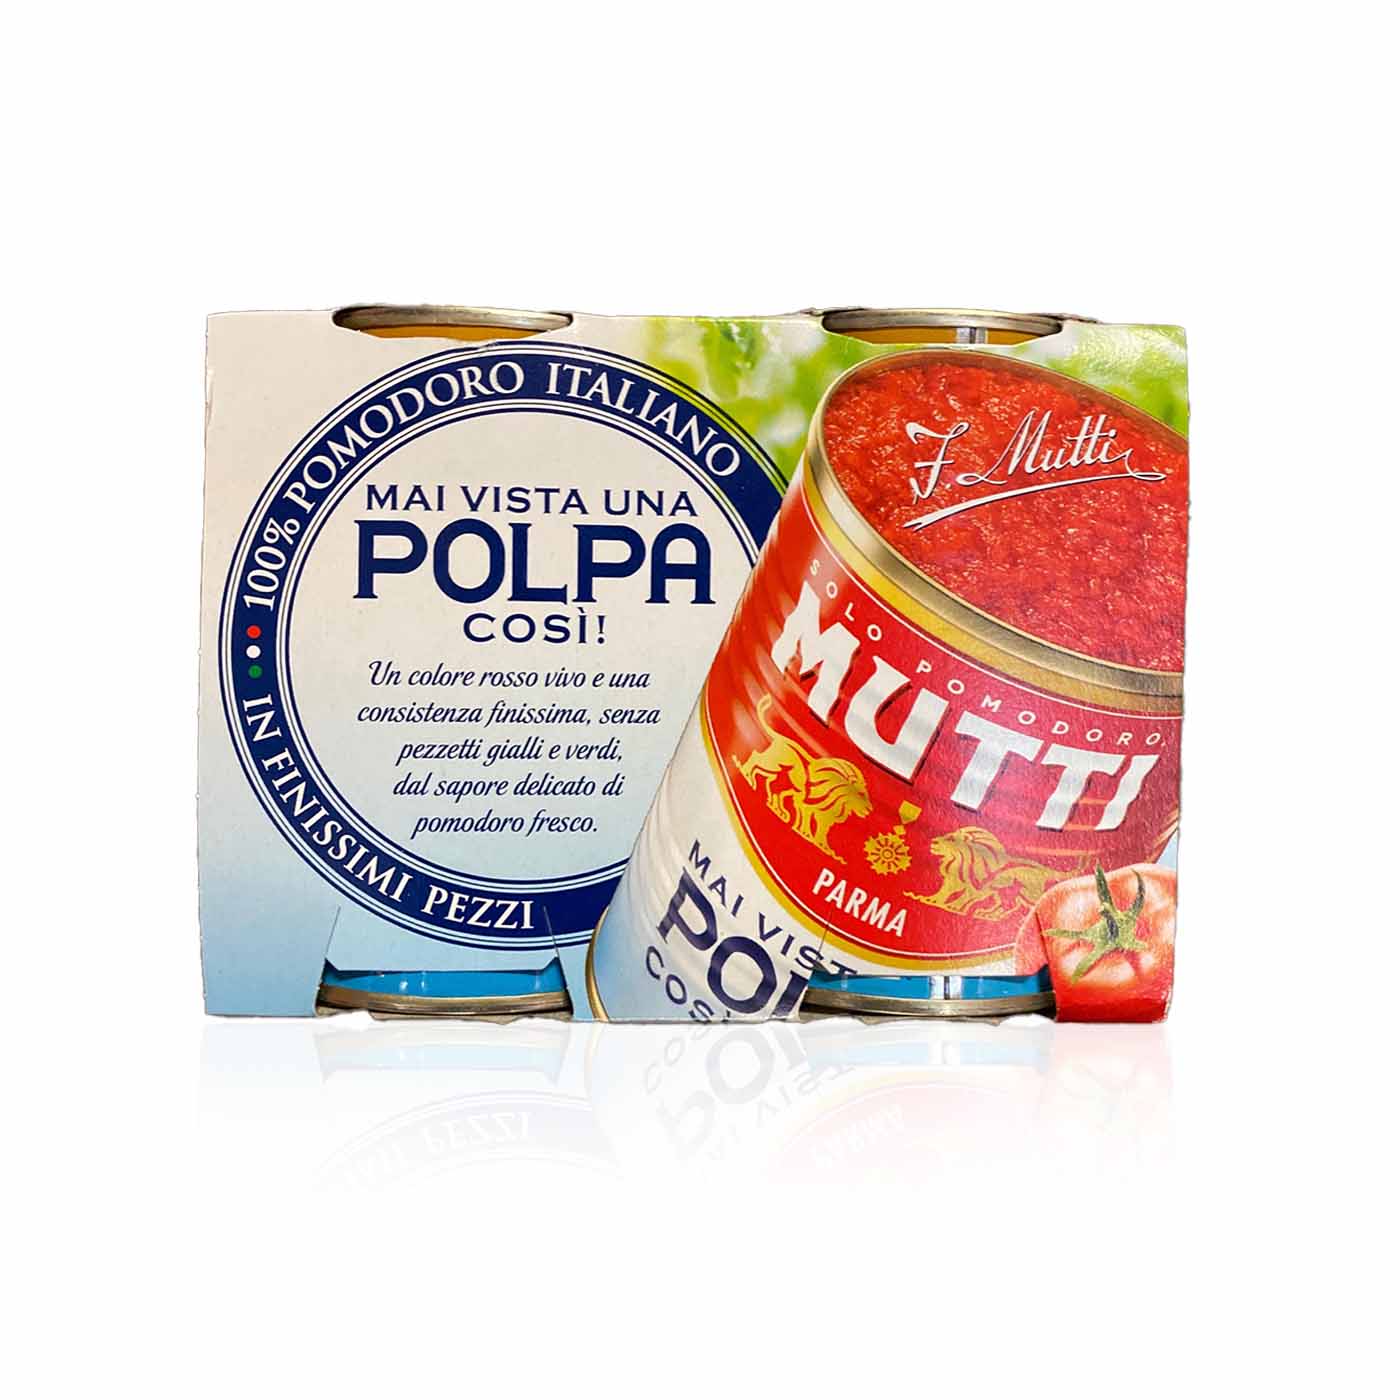 MUTTI - Polpa - 0,8kg - italienisch-einkaufen.de